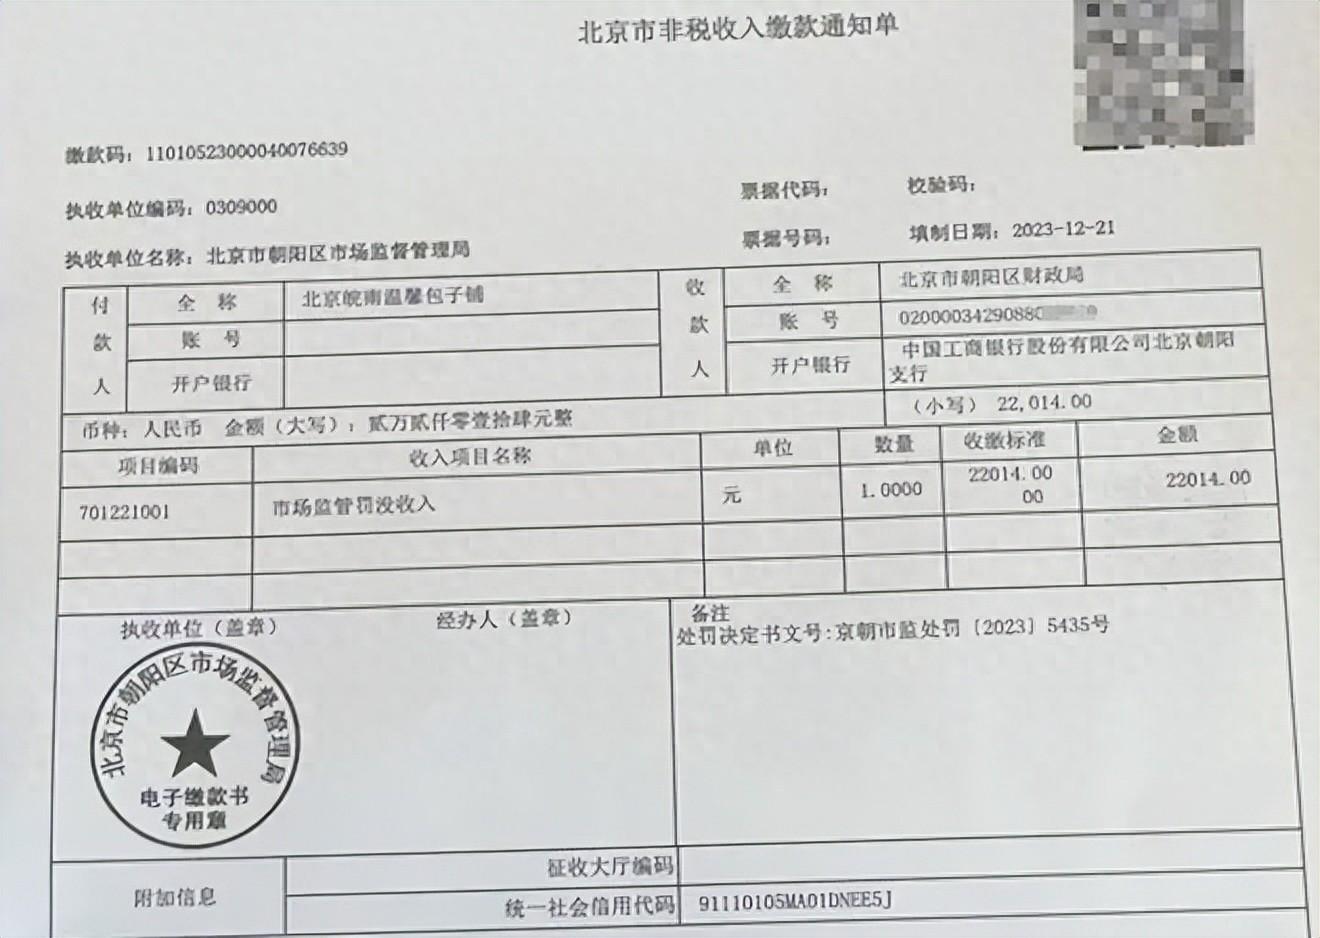 包子铺卖豆腐脑被罚2万多（北京皖南温馨包子铺超范围经营） 1